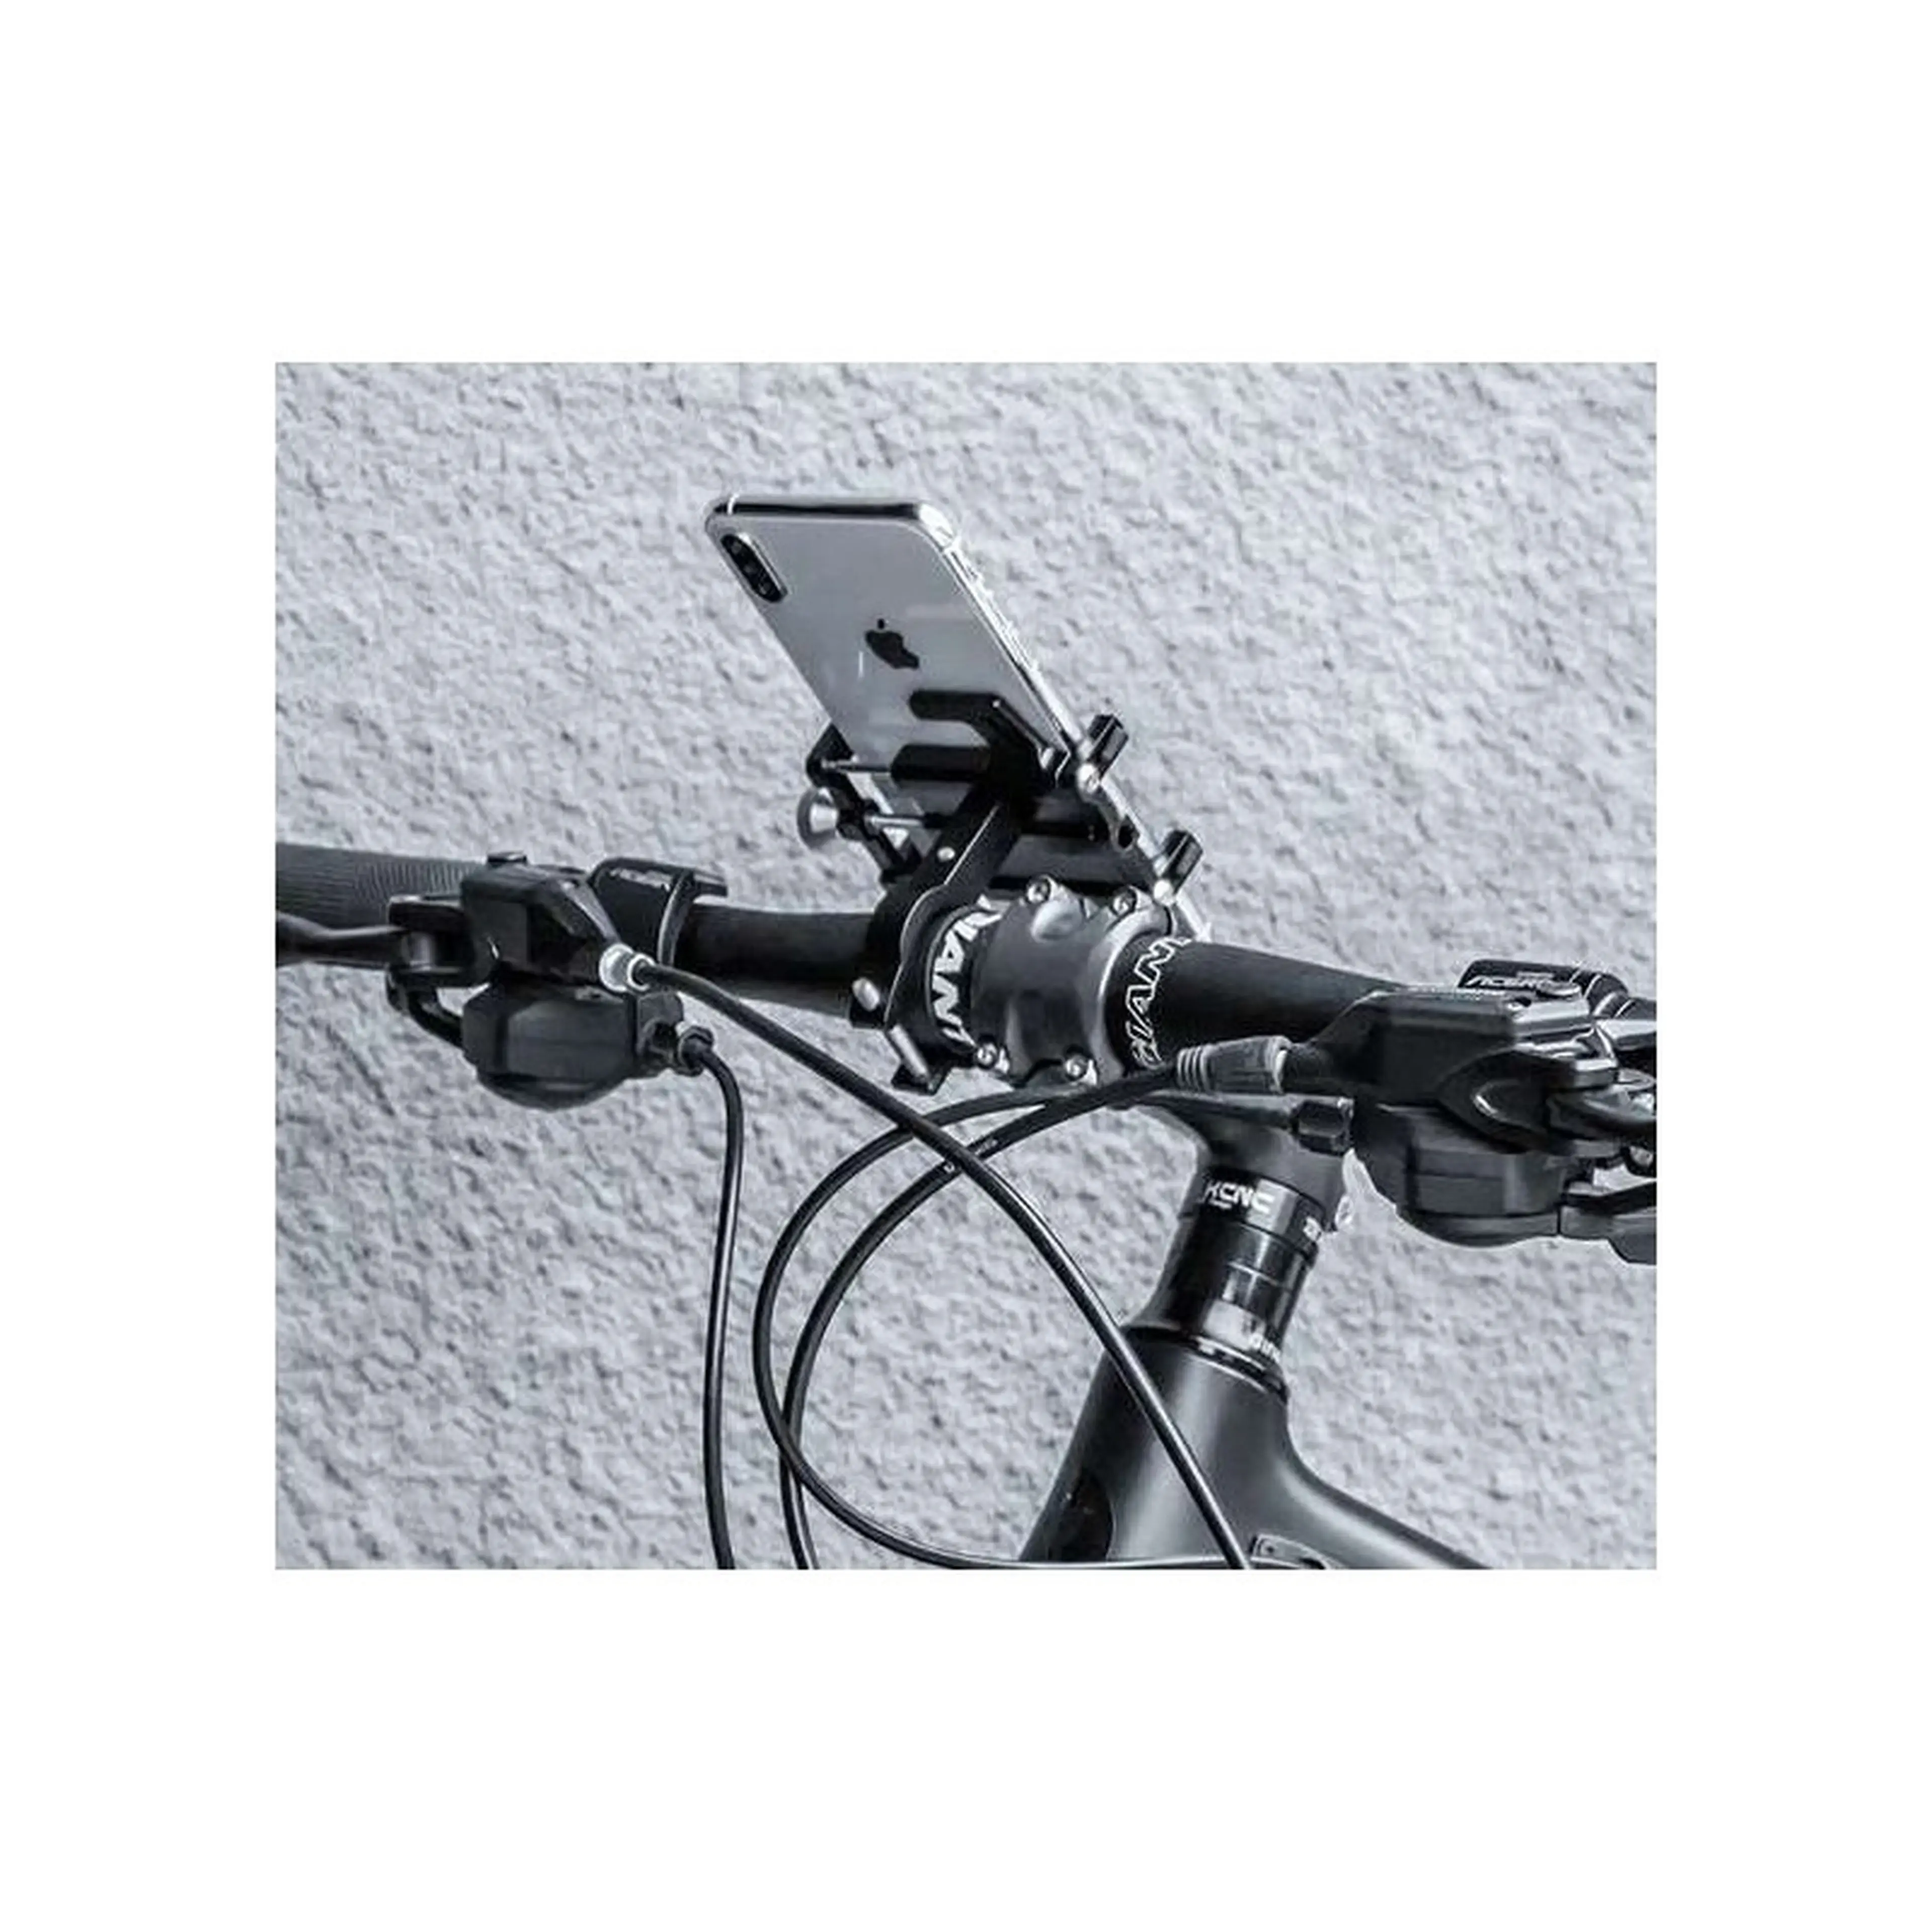 4. Suport telefon pentru bicicleta cu elastic